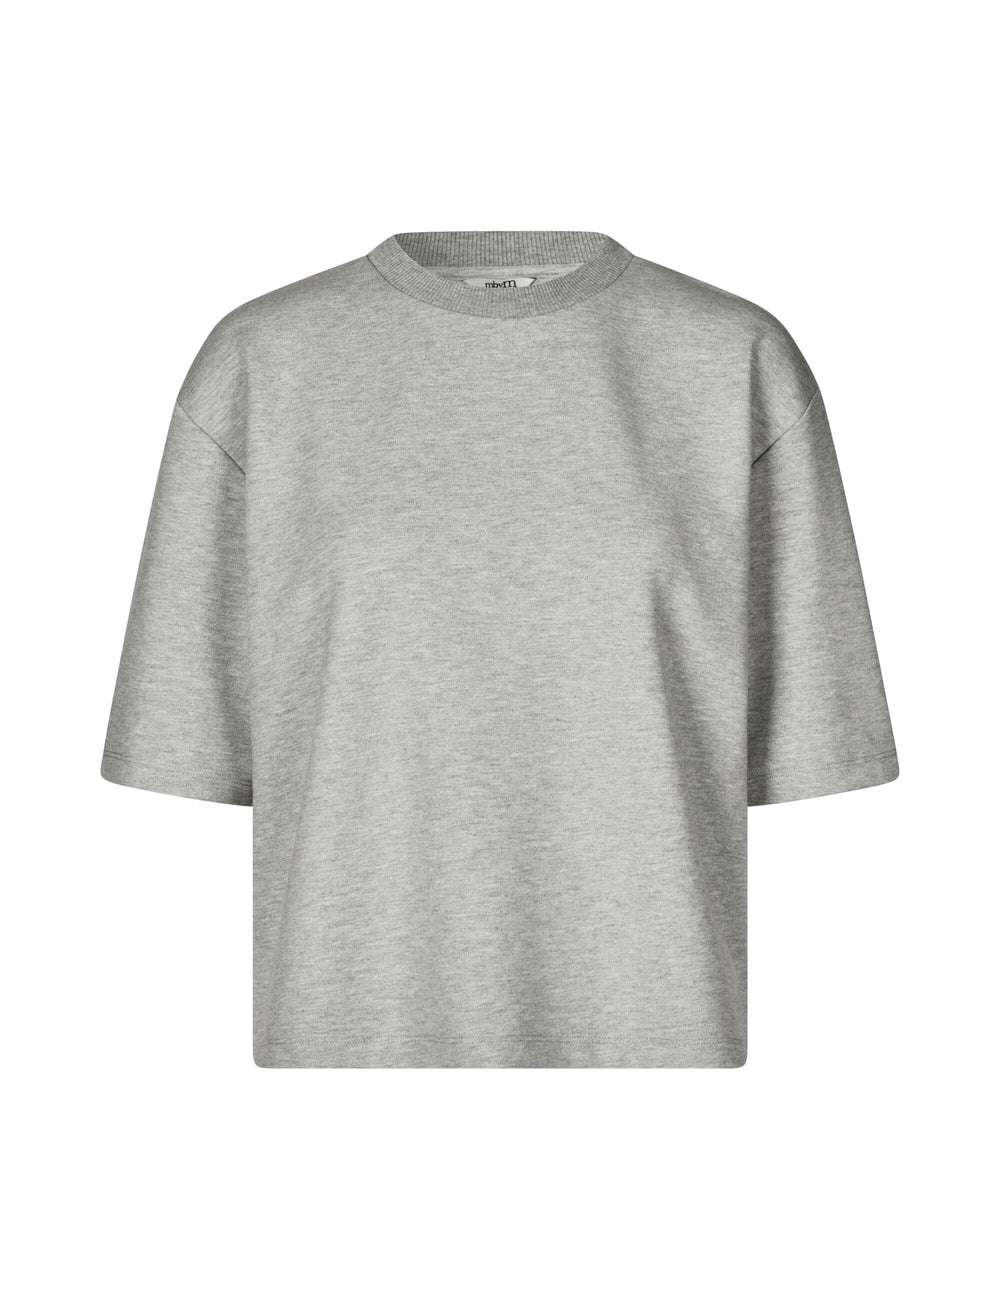 MbyM - Emrys-M - 604 Light Grey Melange T-shirts 